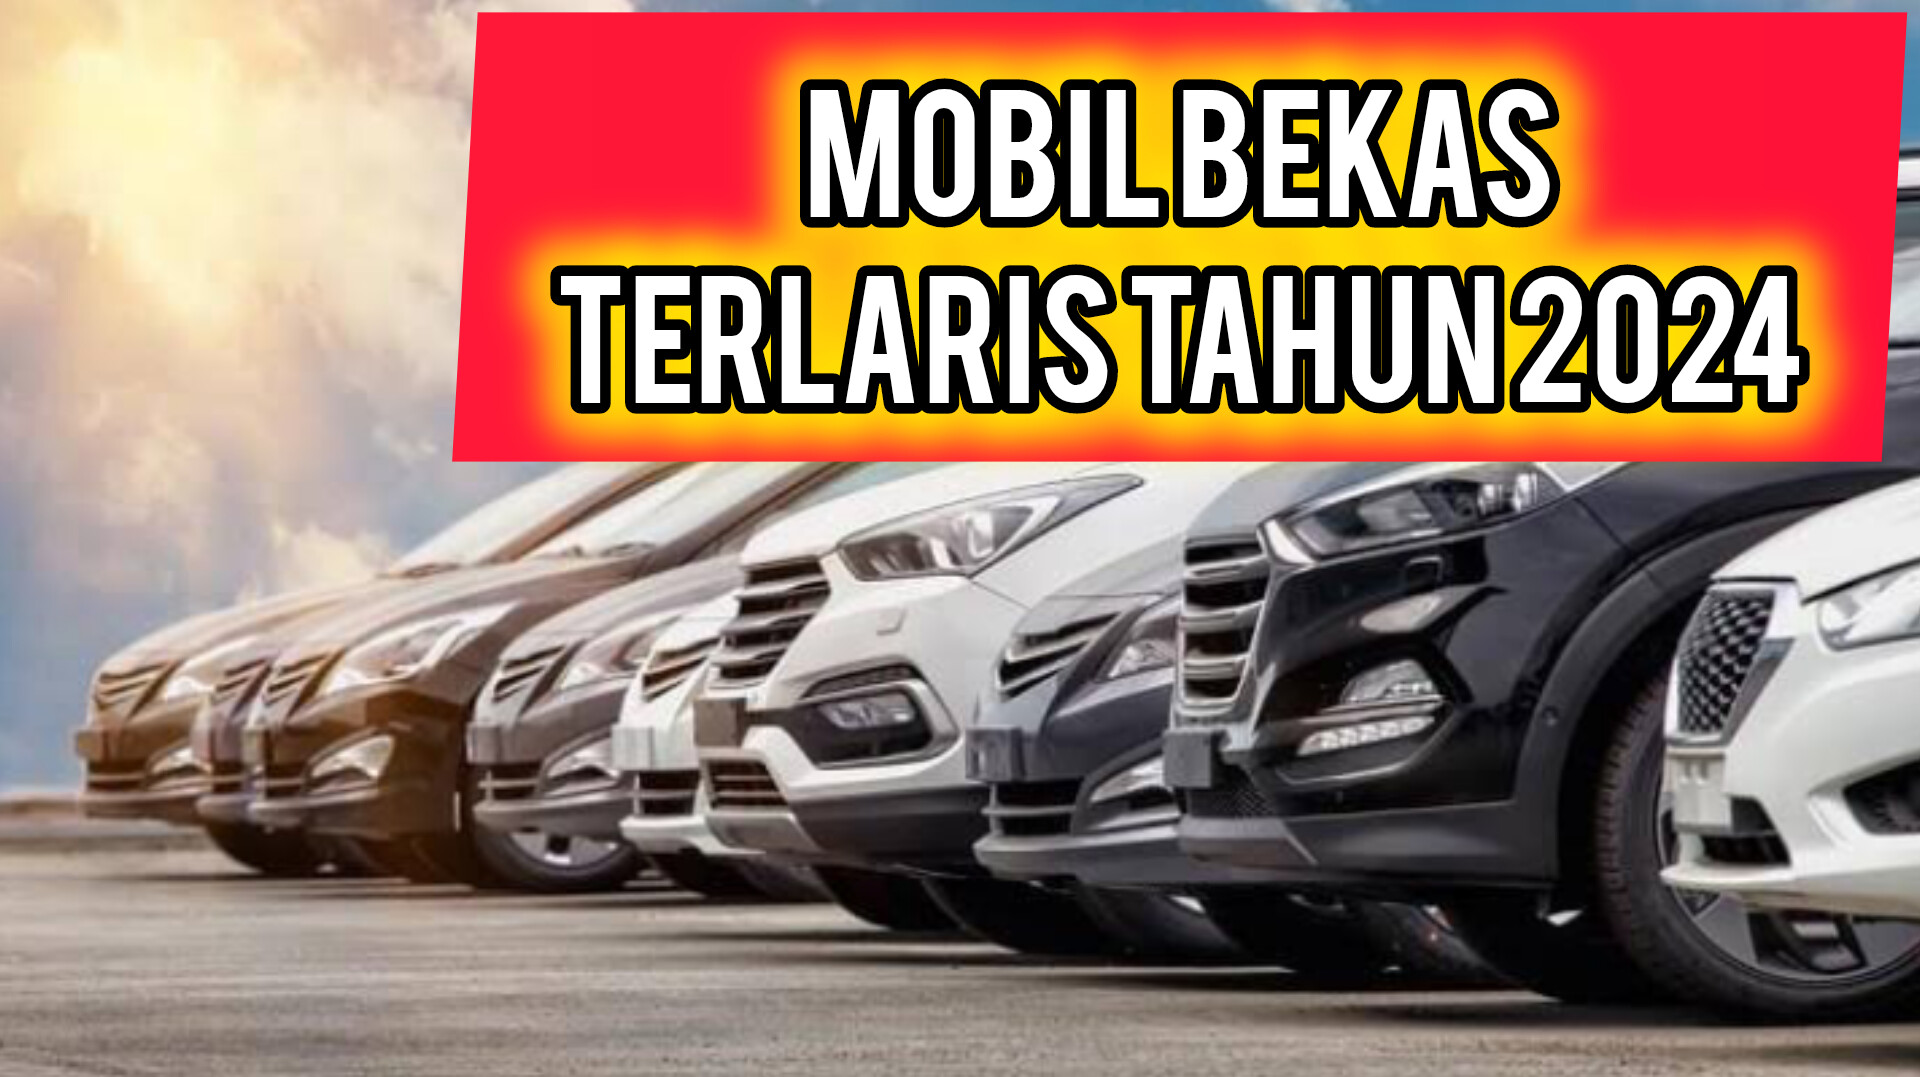 Daftar 5 Mobil Bekas yang Paling Diminati dan Banyak Dicari Masyarakat Indonesia Tahun 2024